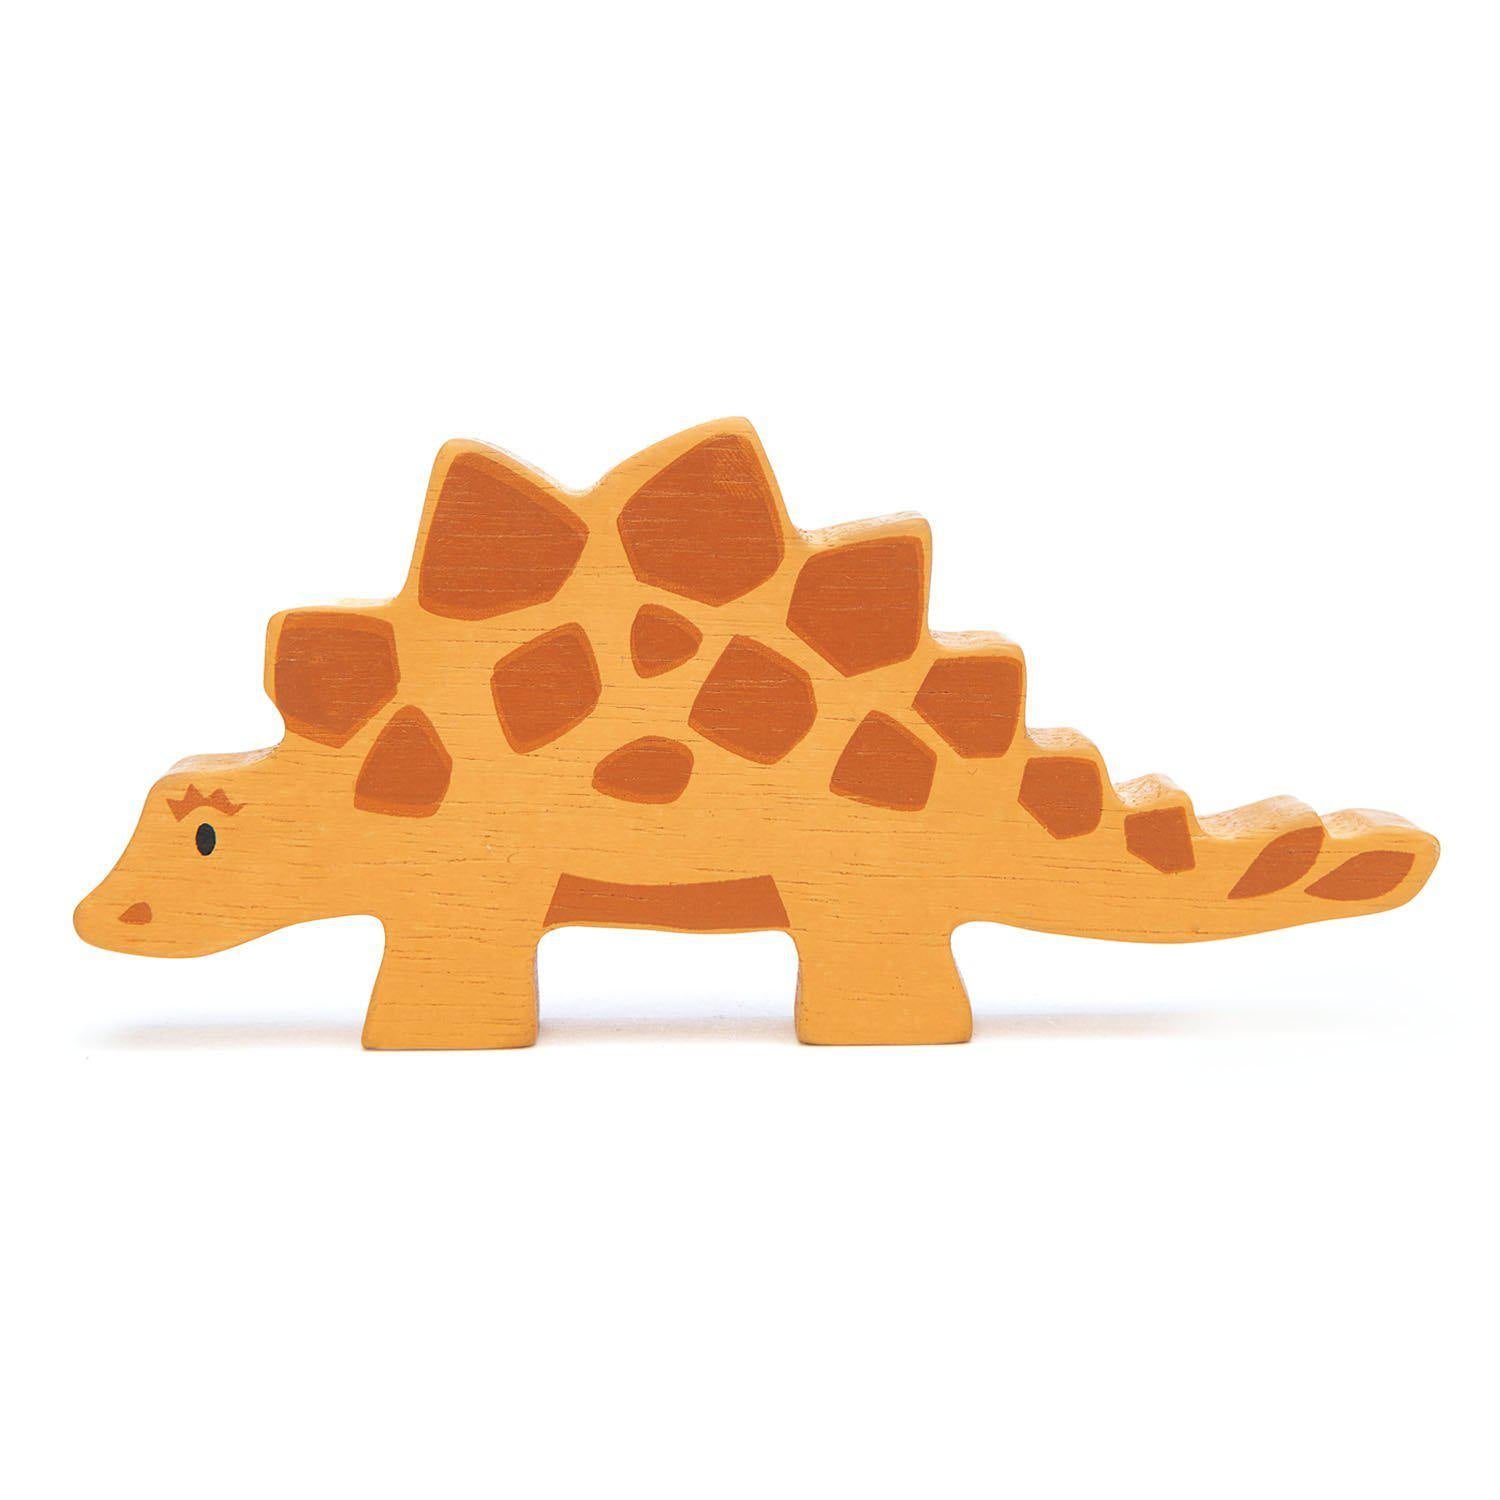 Stegosaurus, prémium minőségű fából - Stegosaurus - Tender Leaf Toys-Tender Leaf Toys-1-Játszma.ro - A maradandó élmények boltja